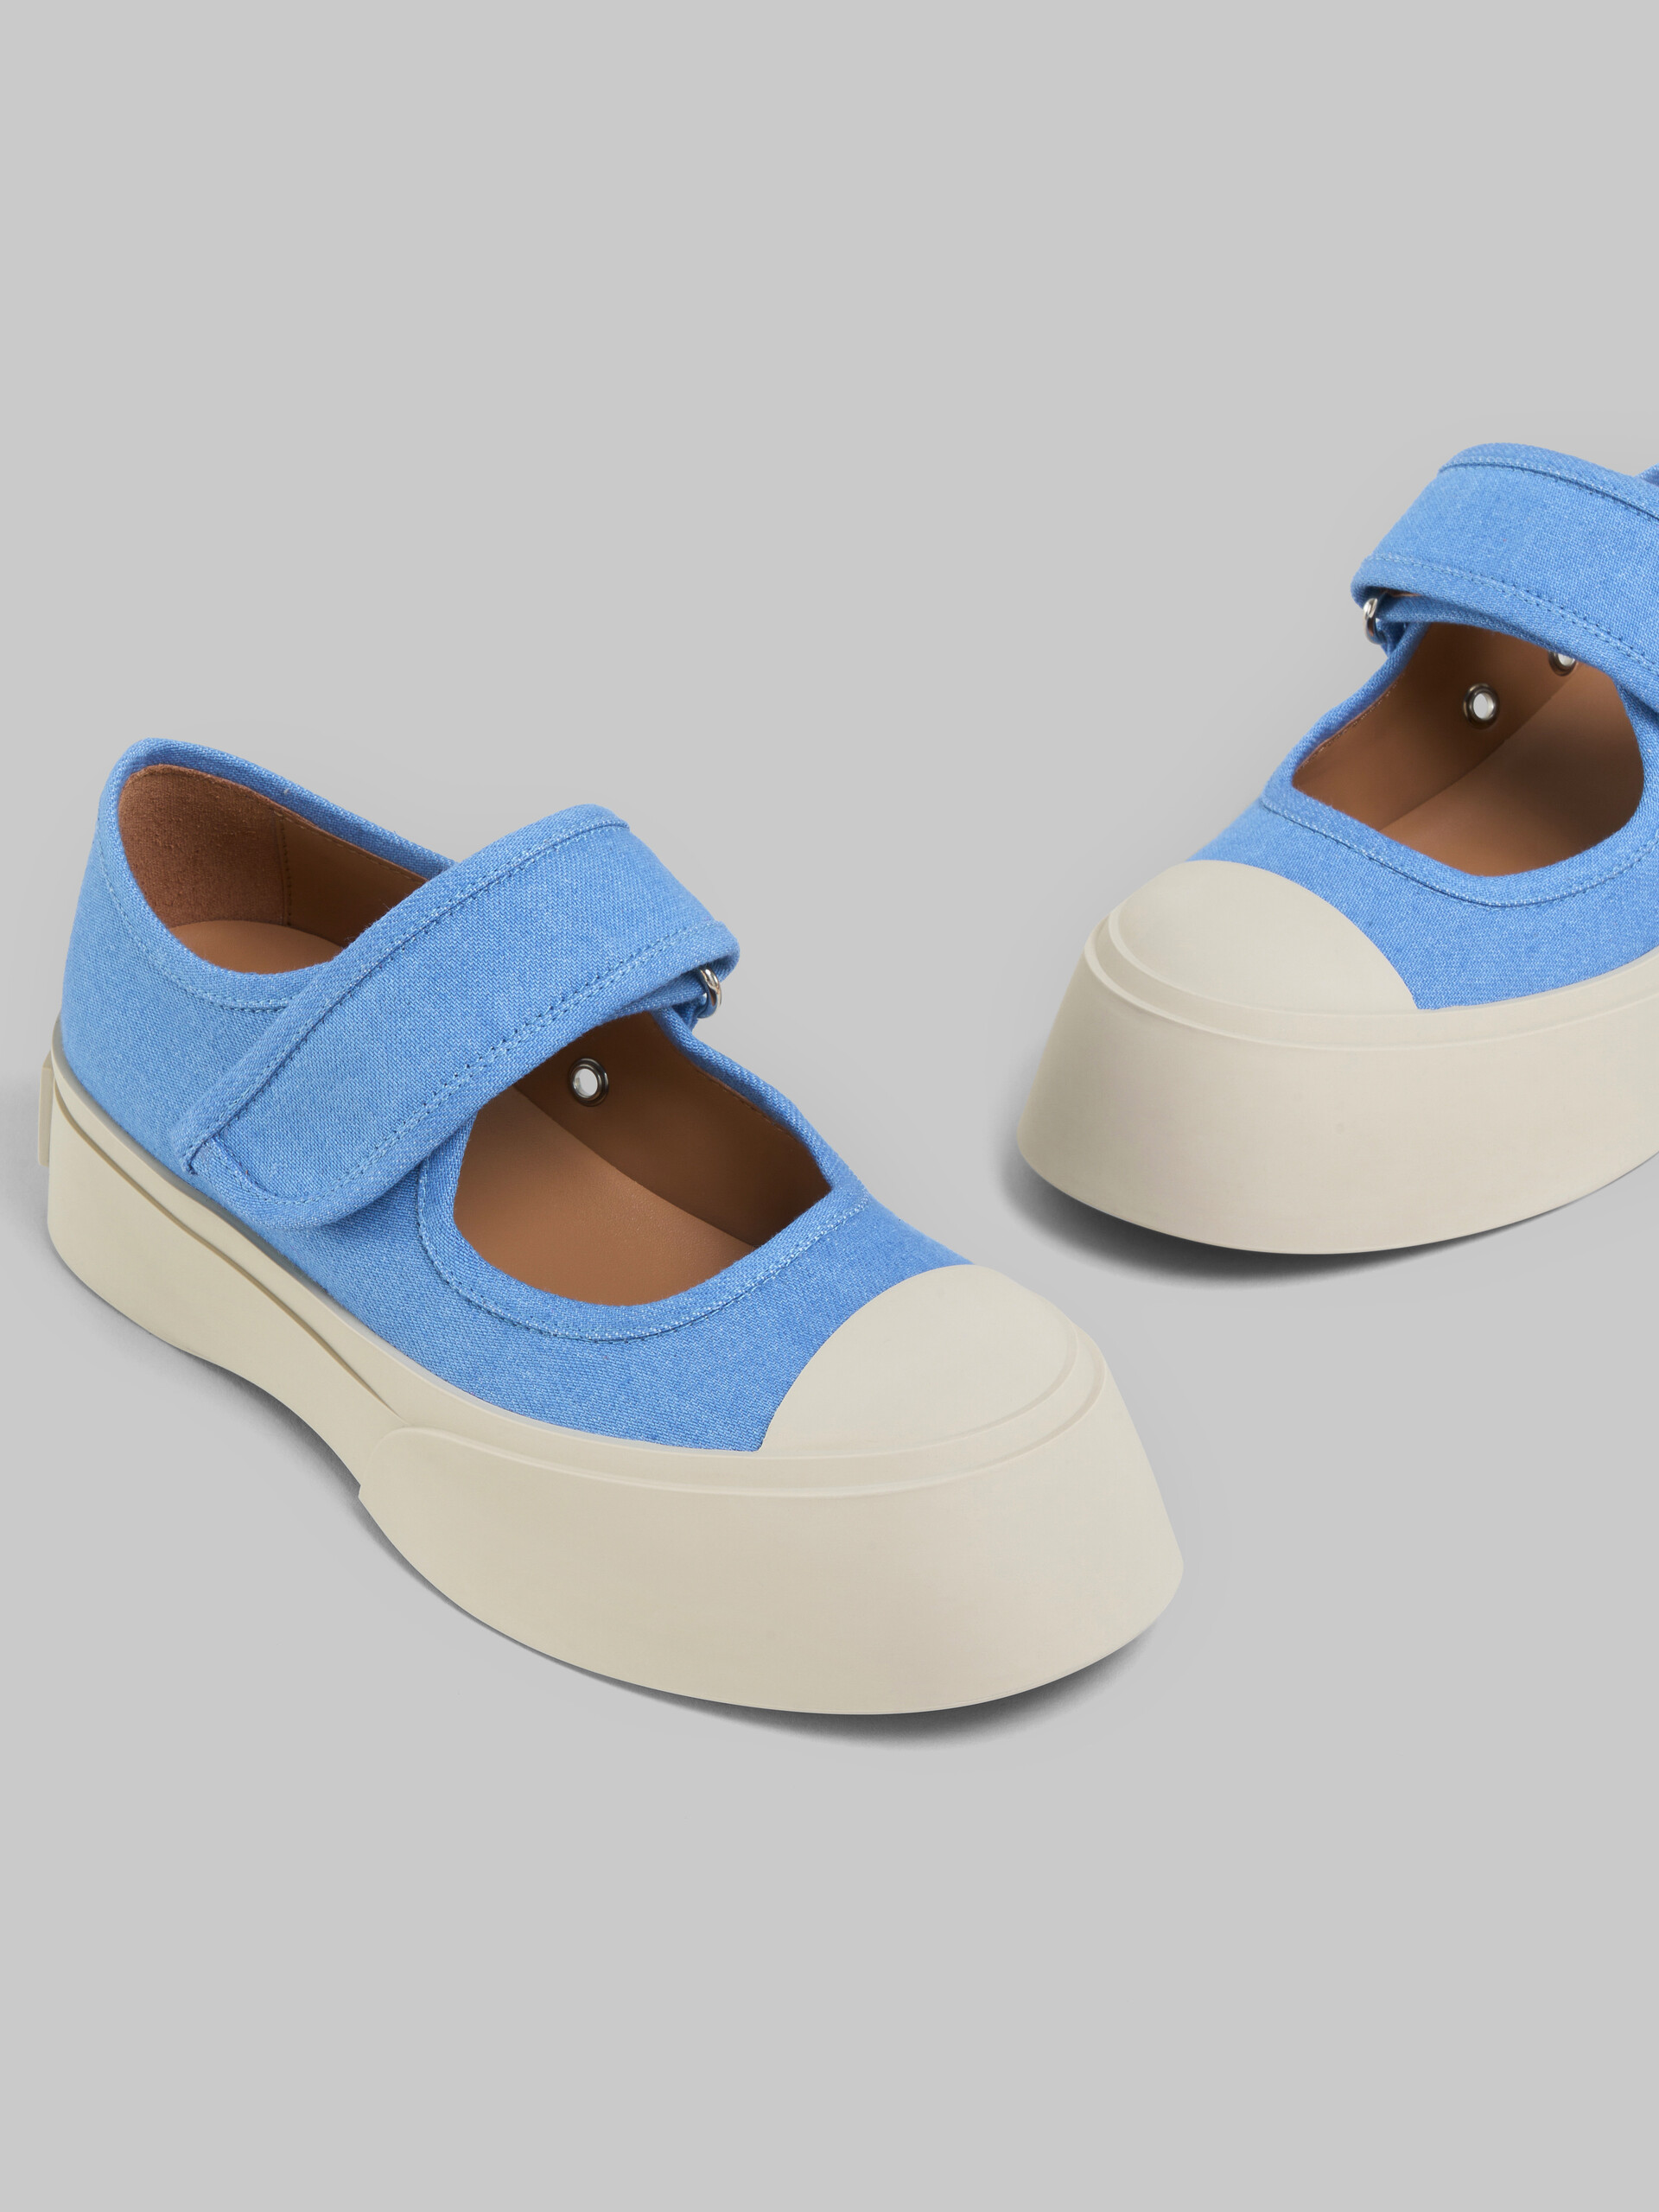 Sneakers Mary Jane en denim bleu clair - Sneakers - Image 5